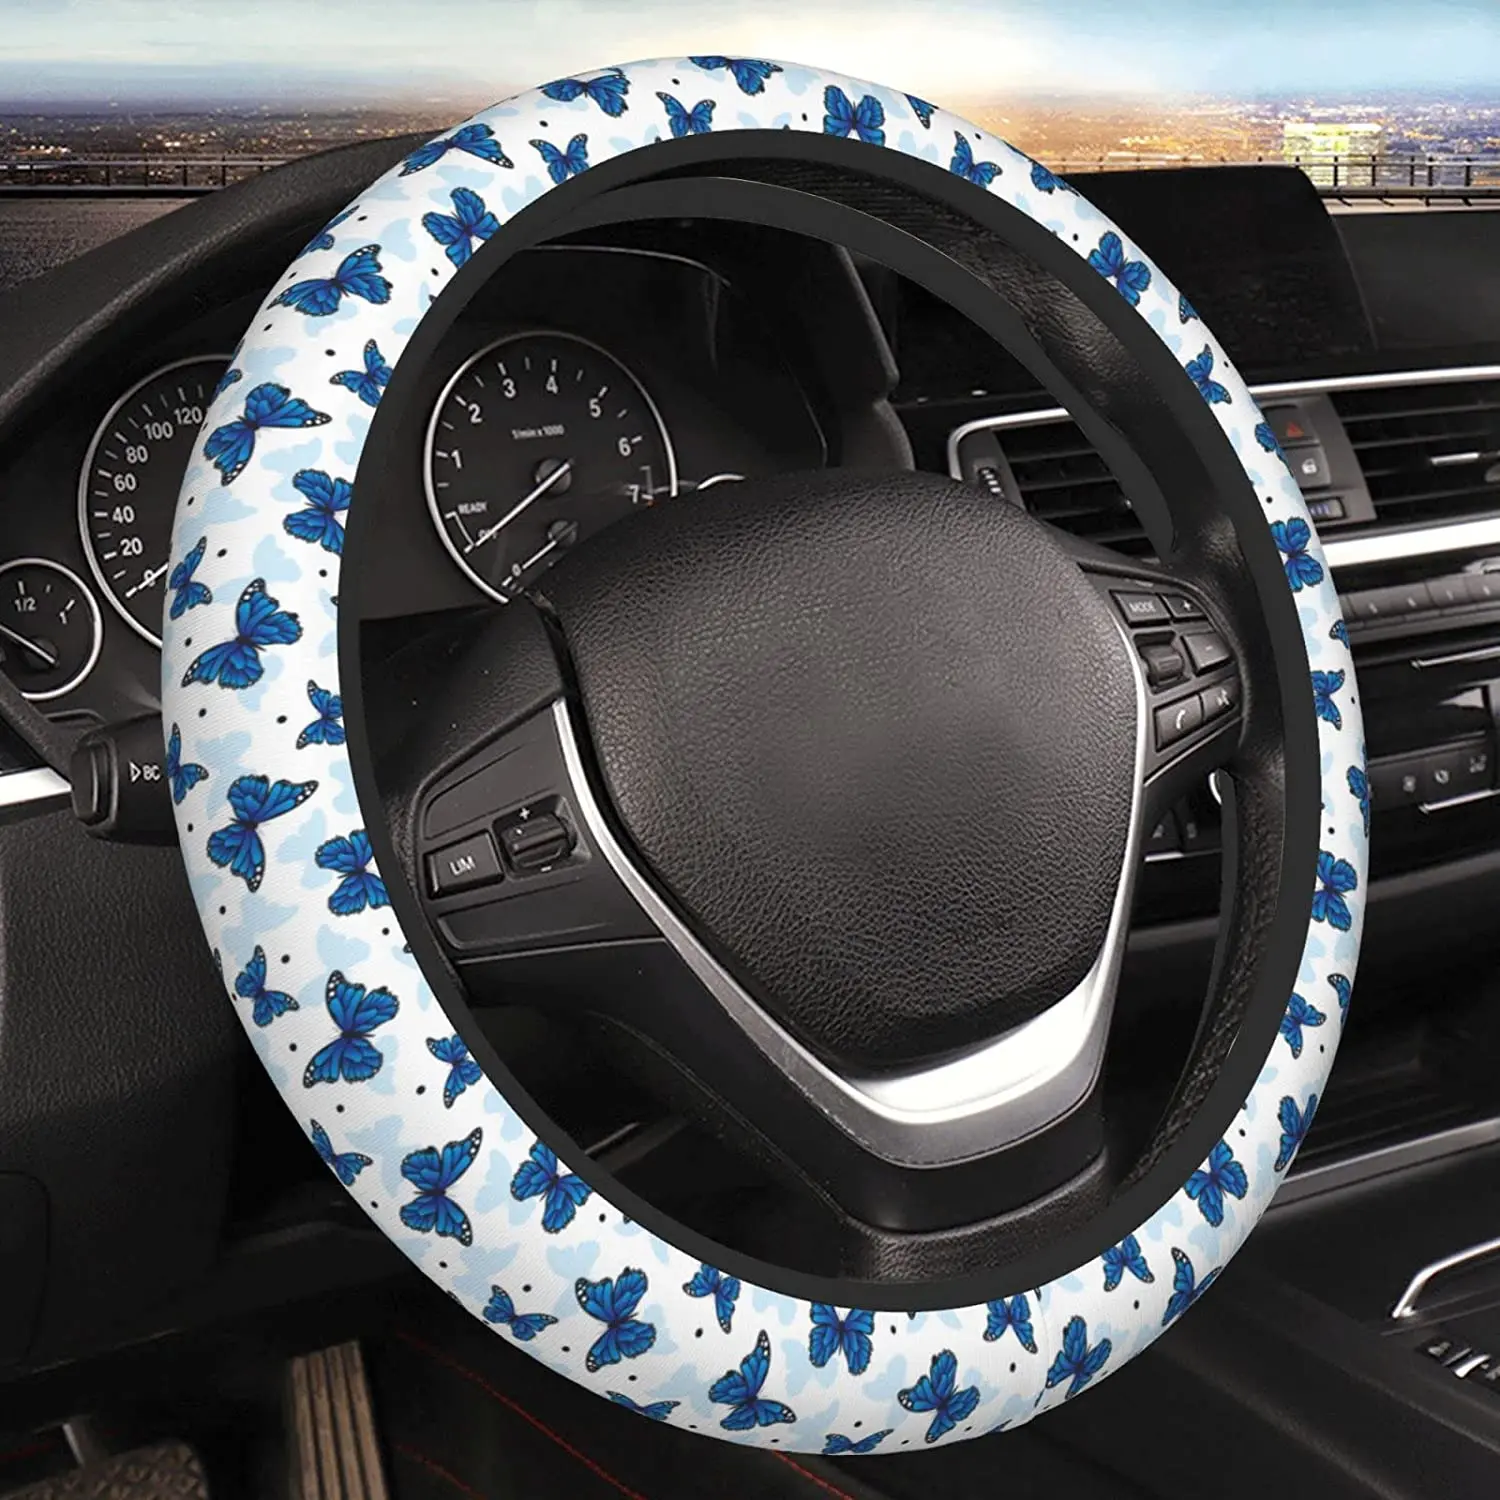 

Чехол для руля с синей бабочкой, неопреновый Универсальный 15-дюймовый автомобильный протектор руля для женщин и мужчин